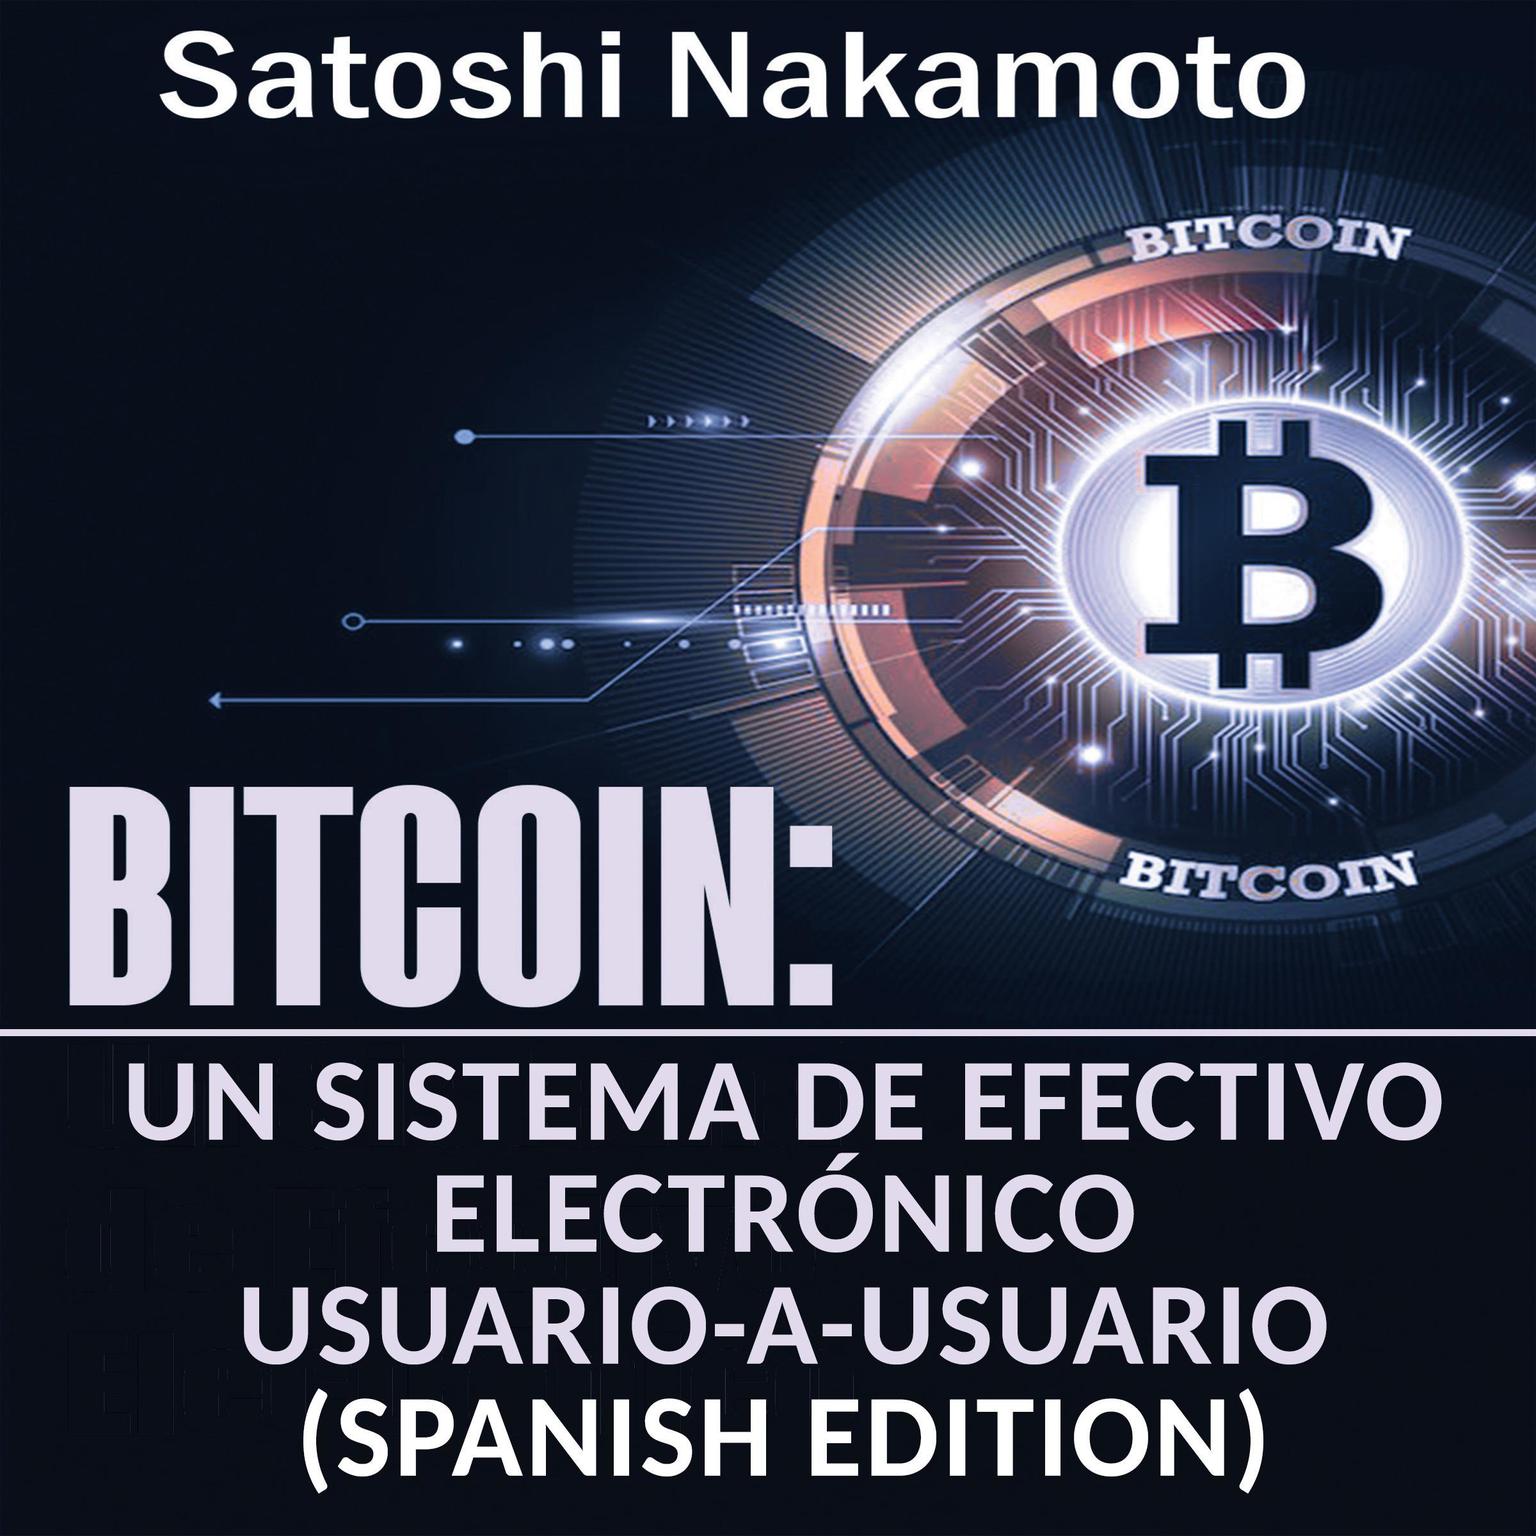 Bitcoin: Un Sistema de Efectivo Electrónico Usuario-a-Usuario [Bitcoin: A User-to-User Electronic Cash System] Audiobook, by Satoshi Nakamoto